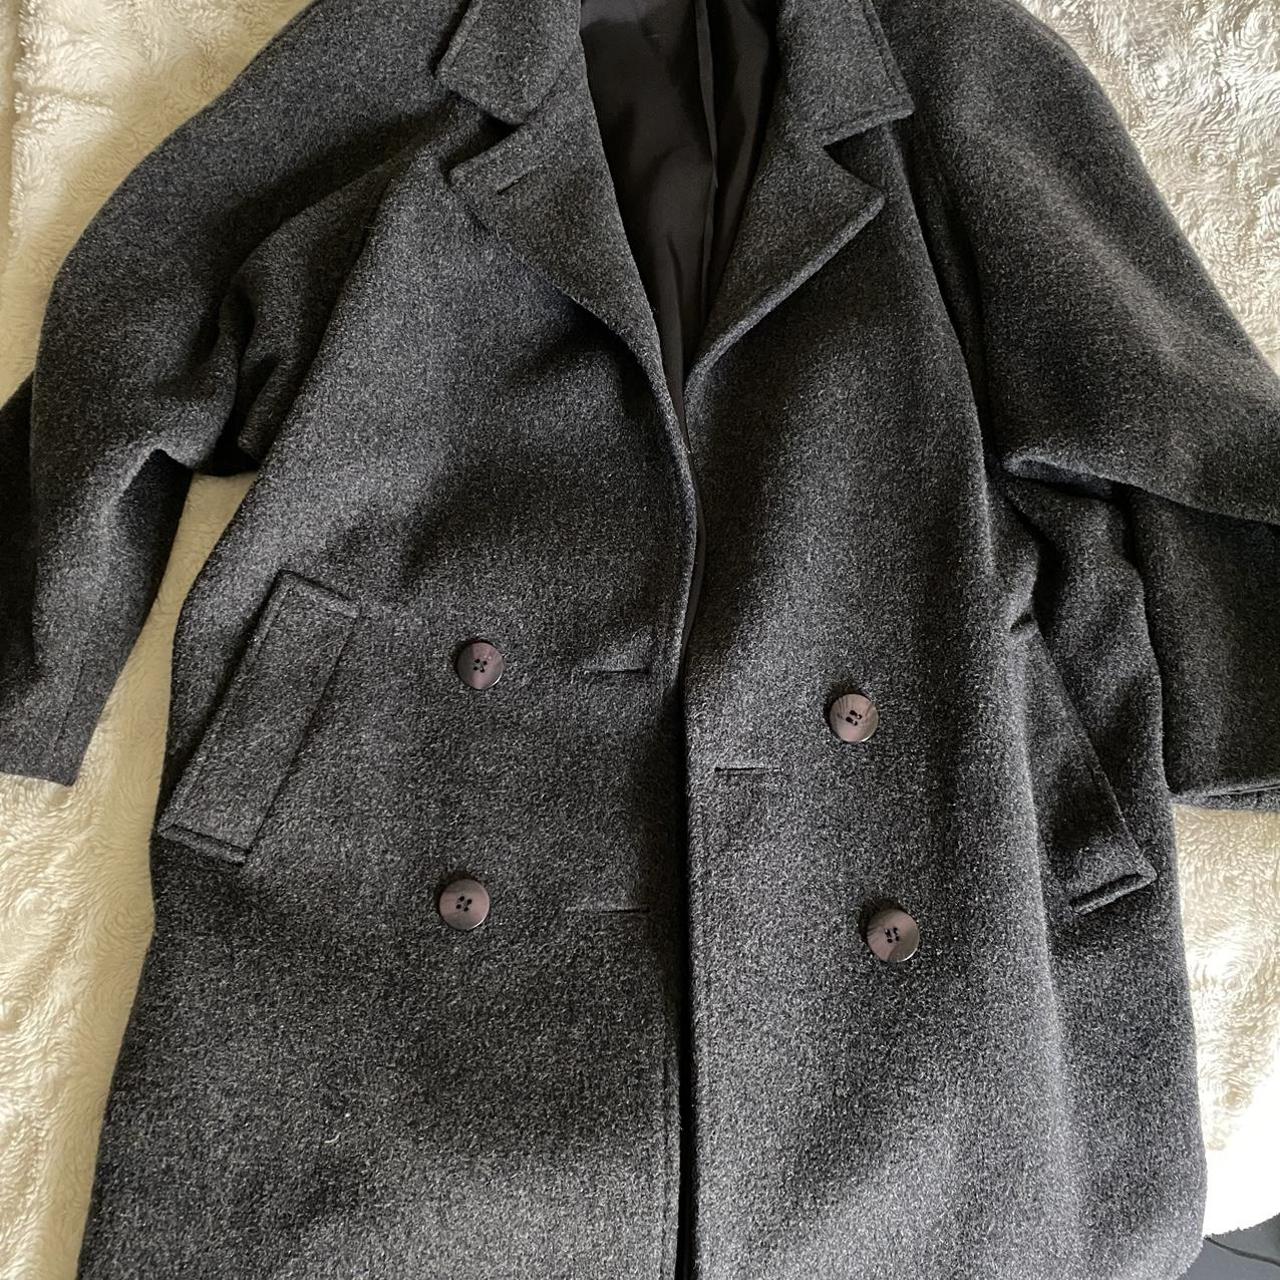 Vintage Applause brand Wool Coat Wool trench coat... - Depop